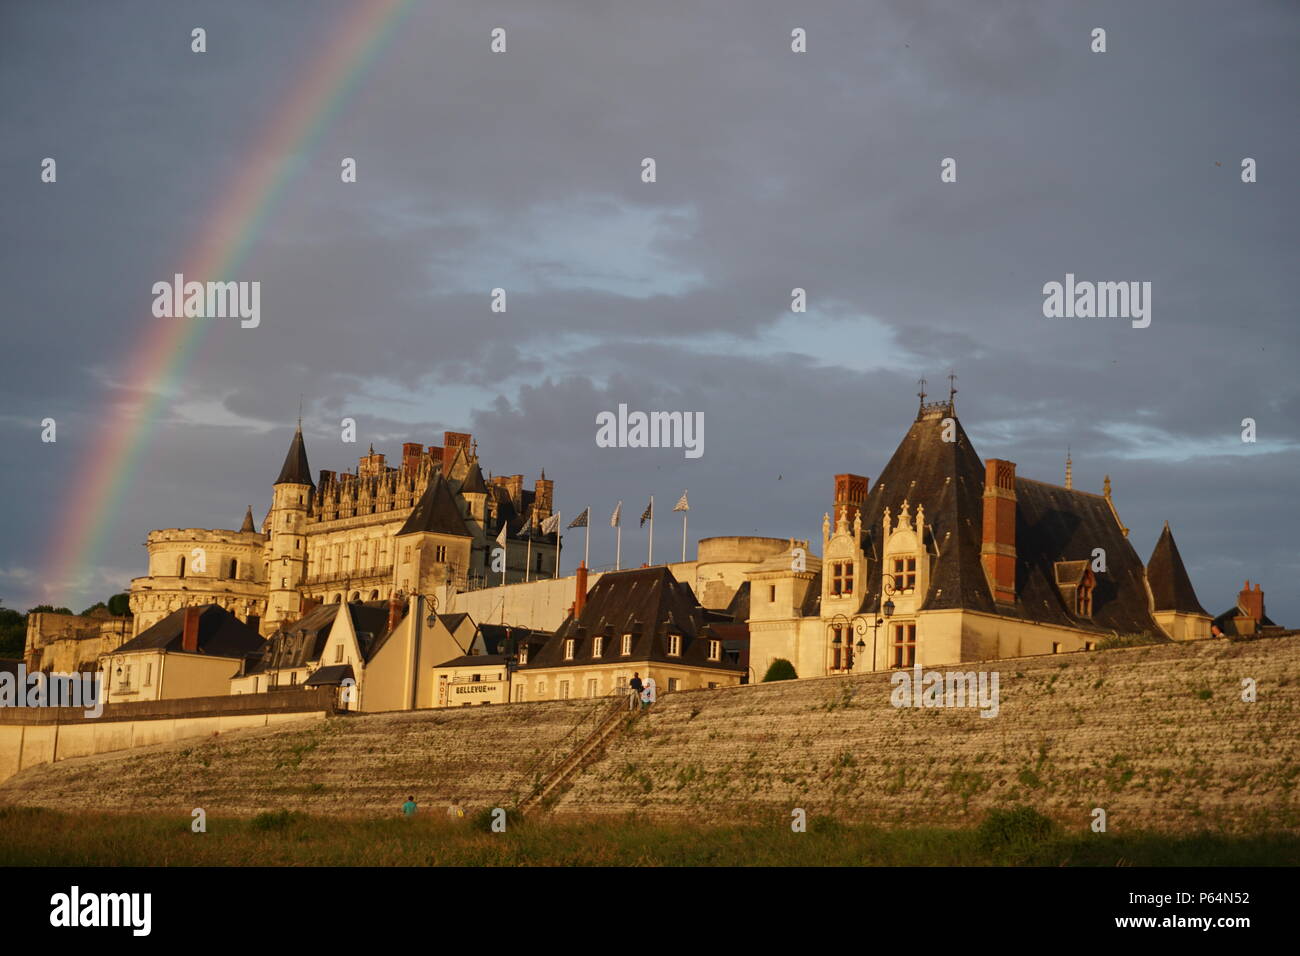 Un arc-en-ciel colorés qui brille au-dessus de la vieille ville médiévale château de pierre d'Amboise, France sur la Loire Banque D'Images